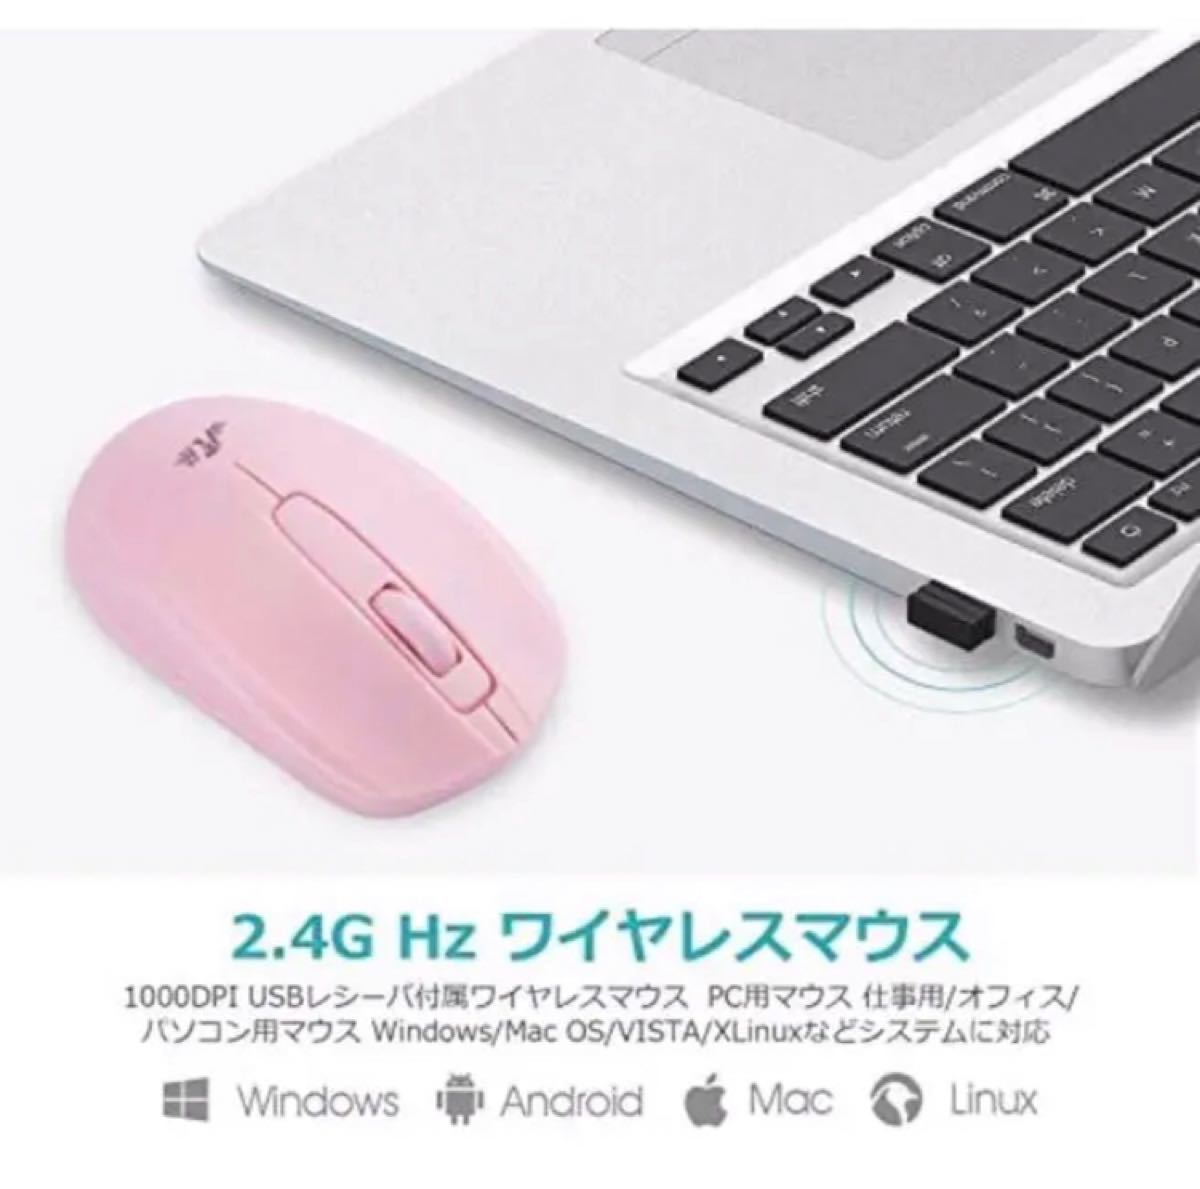 マウスワイヤレス 小型 無線マウス 電池式 2.4GHz 1000DPI 付属ワイヤレスマウス USBレシーバ PC用マウス 仕事